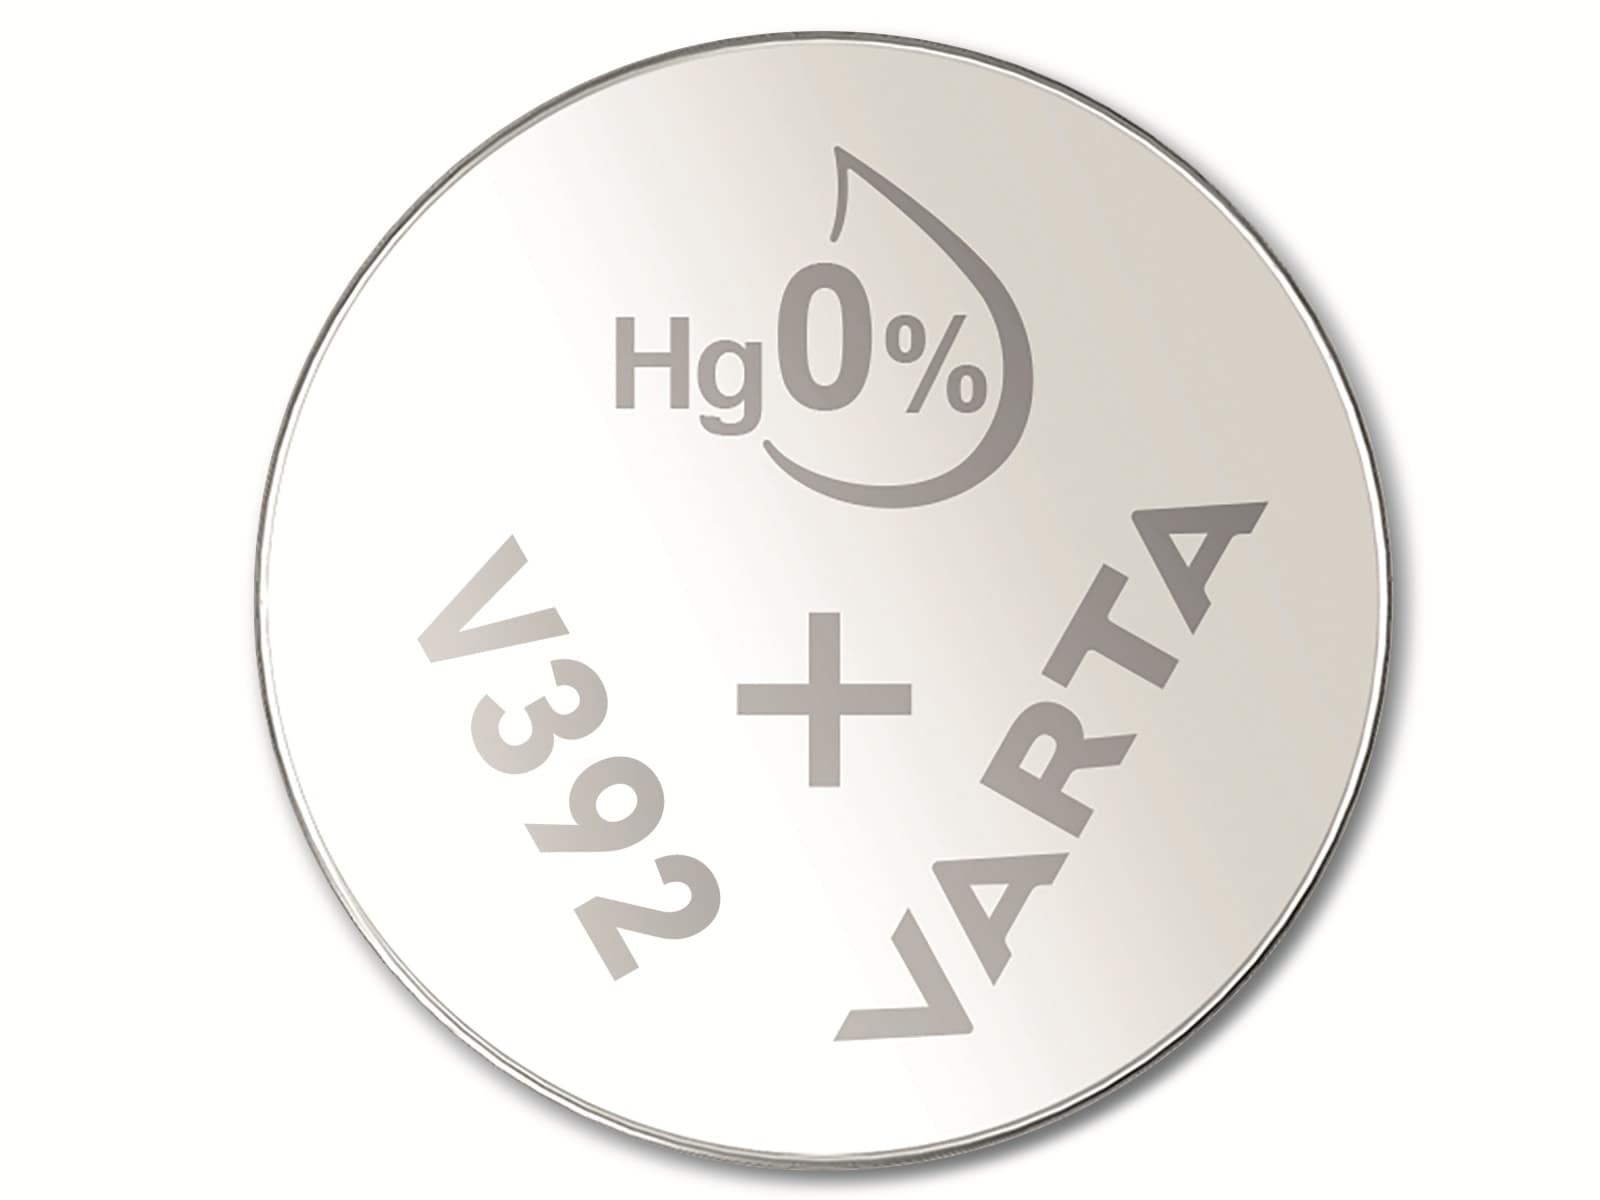 VARTA Knopfzelle Silver Oxide, 392 SR41,  1.55V, 1 Stück